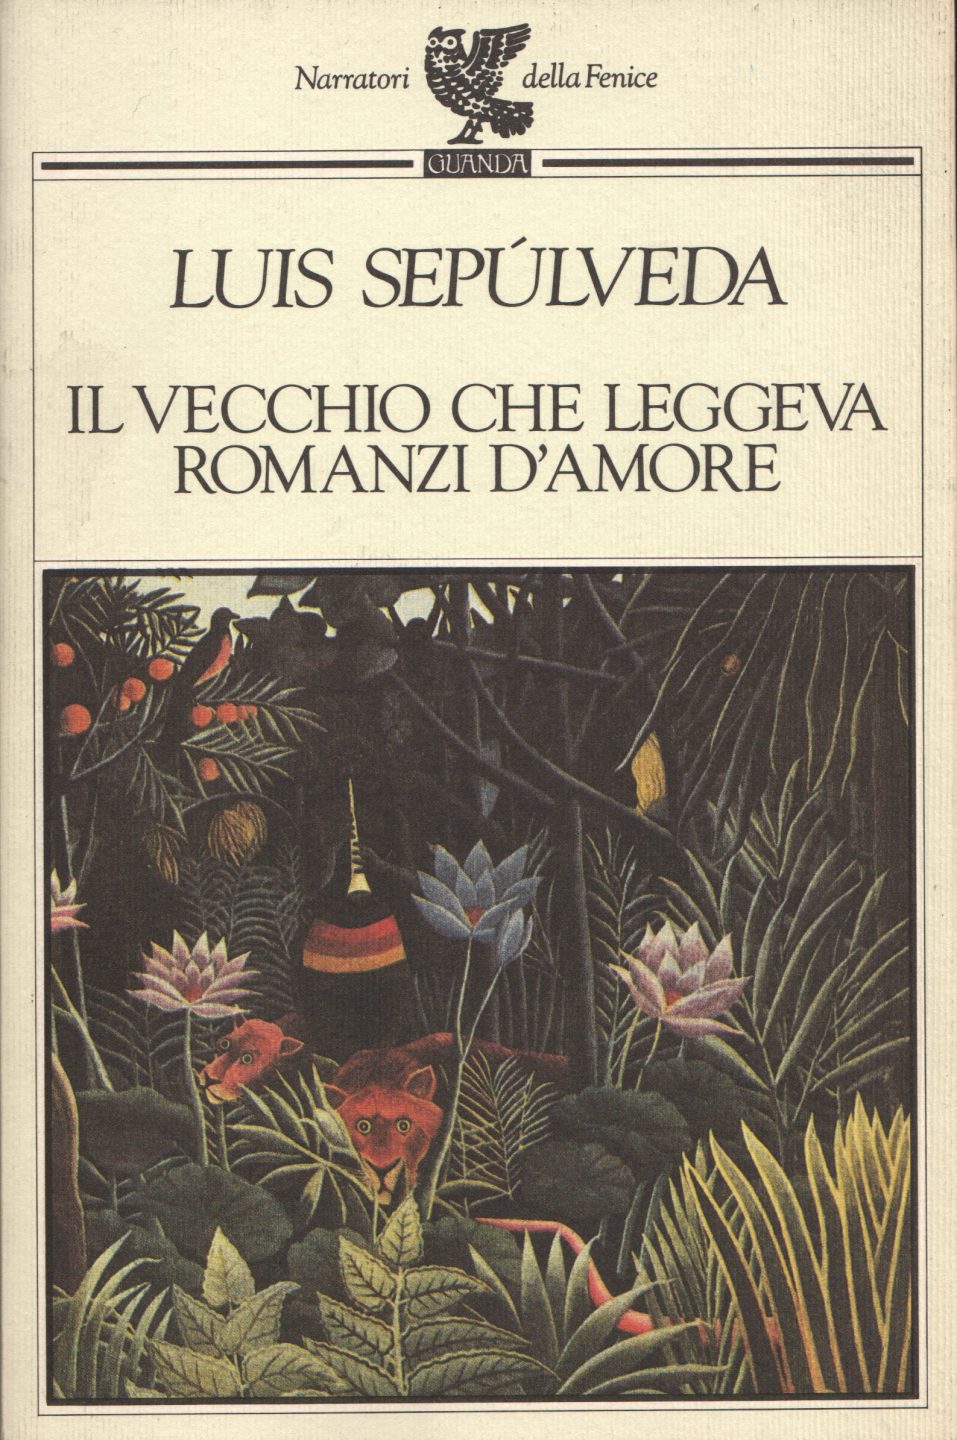 CULTURA: Riflessioni su Luis Sepúlveda, portato via dal Covid e sul suo Vecchio che leggeva romanzi damore